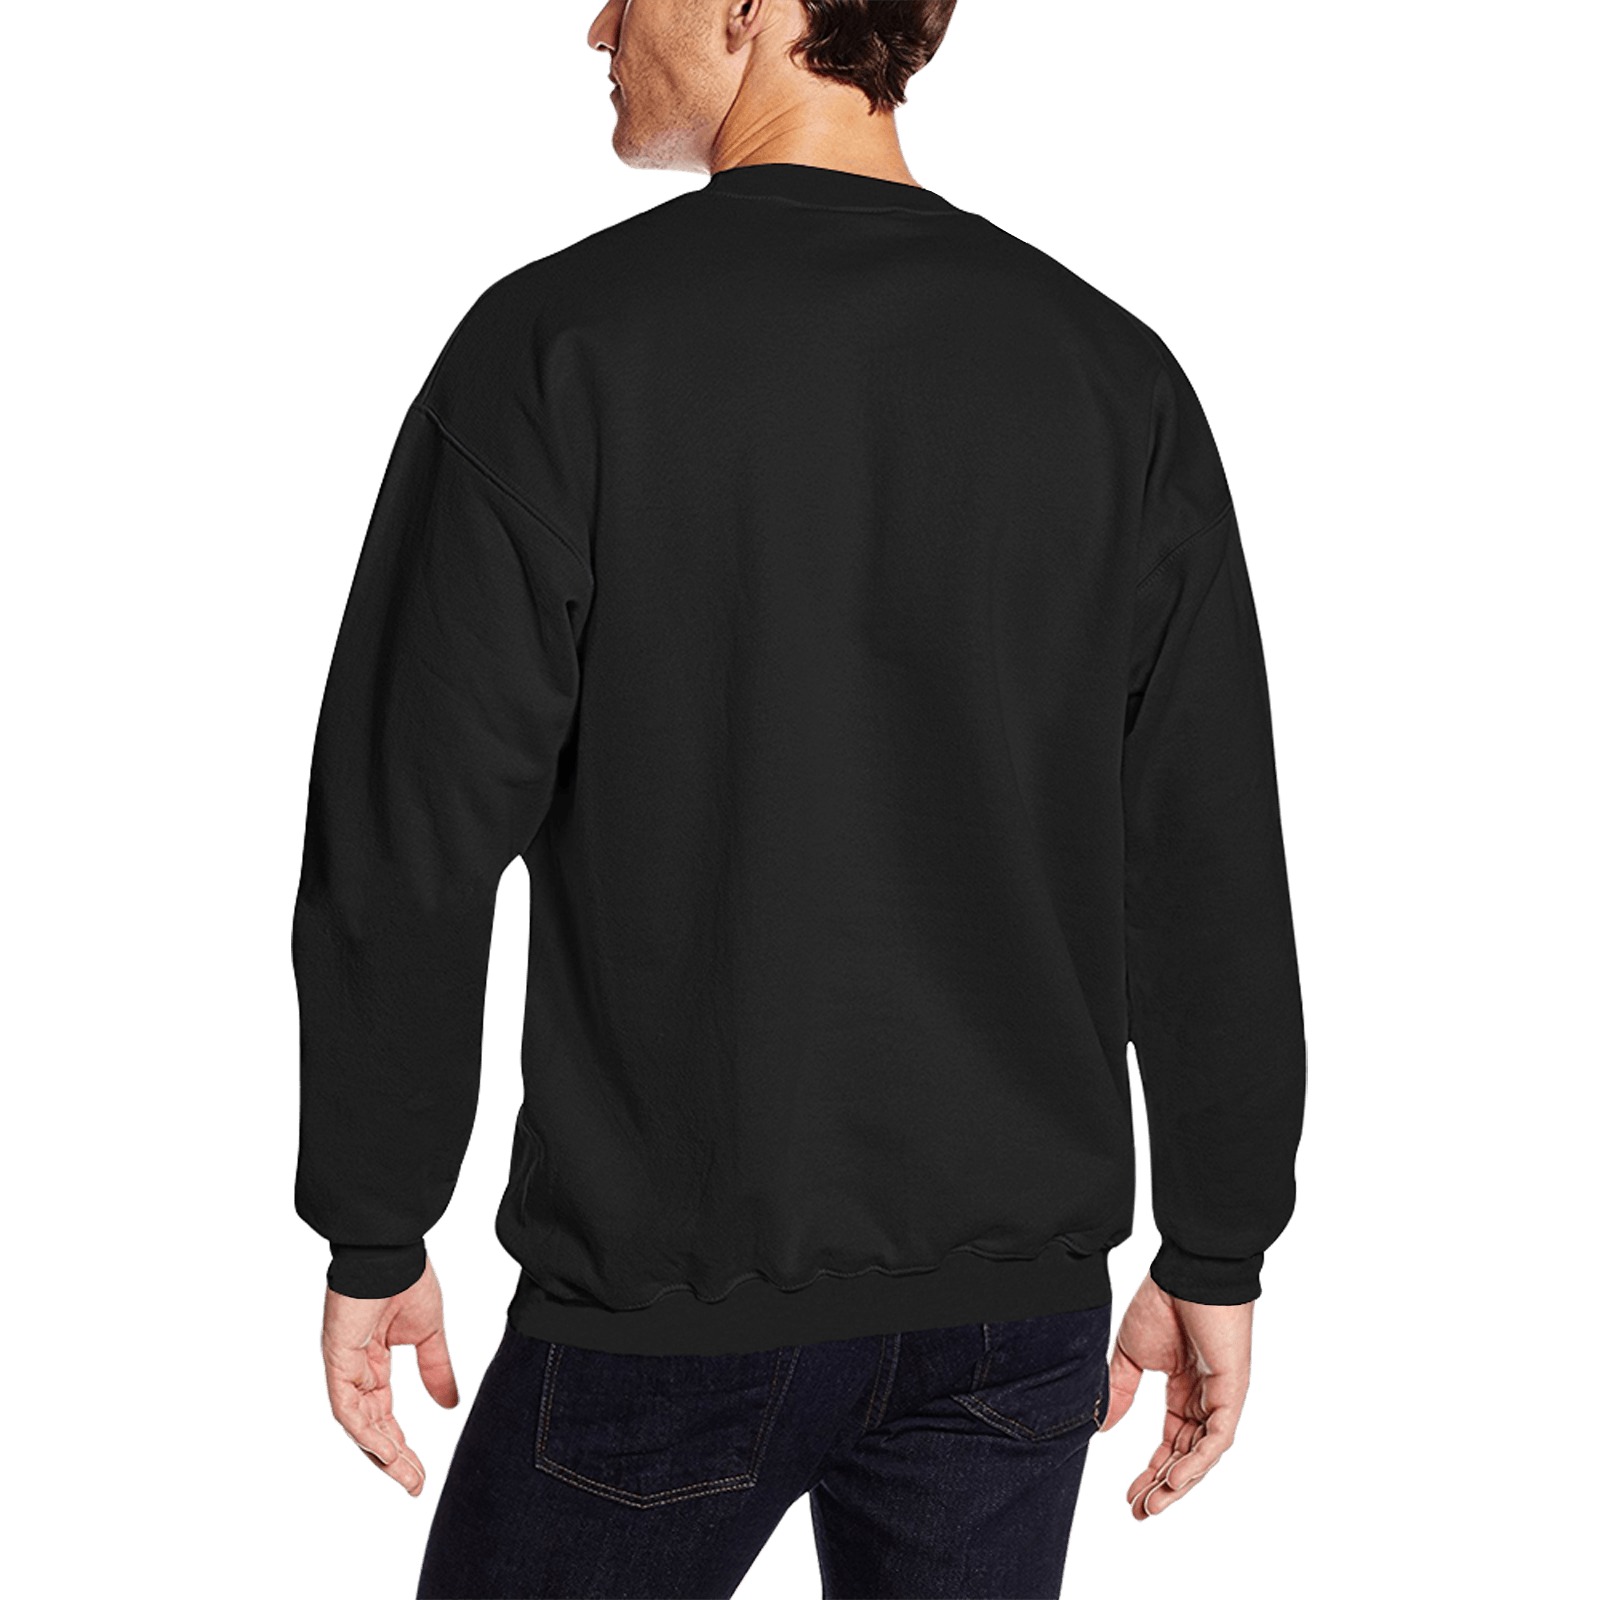 bitcoin-910307 Men's Oversized Fleece Crew Sweatshirt (Model H18)